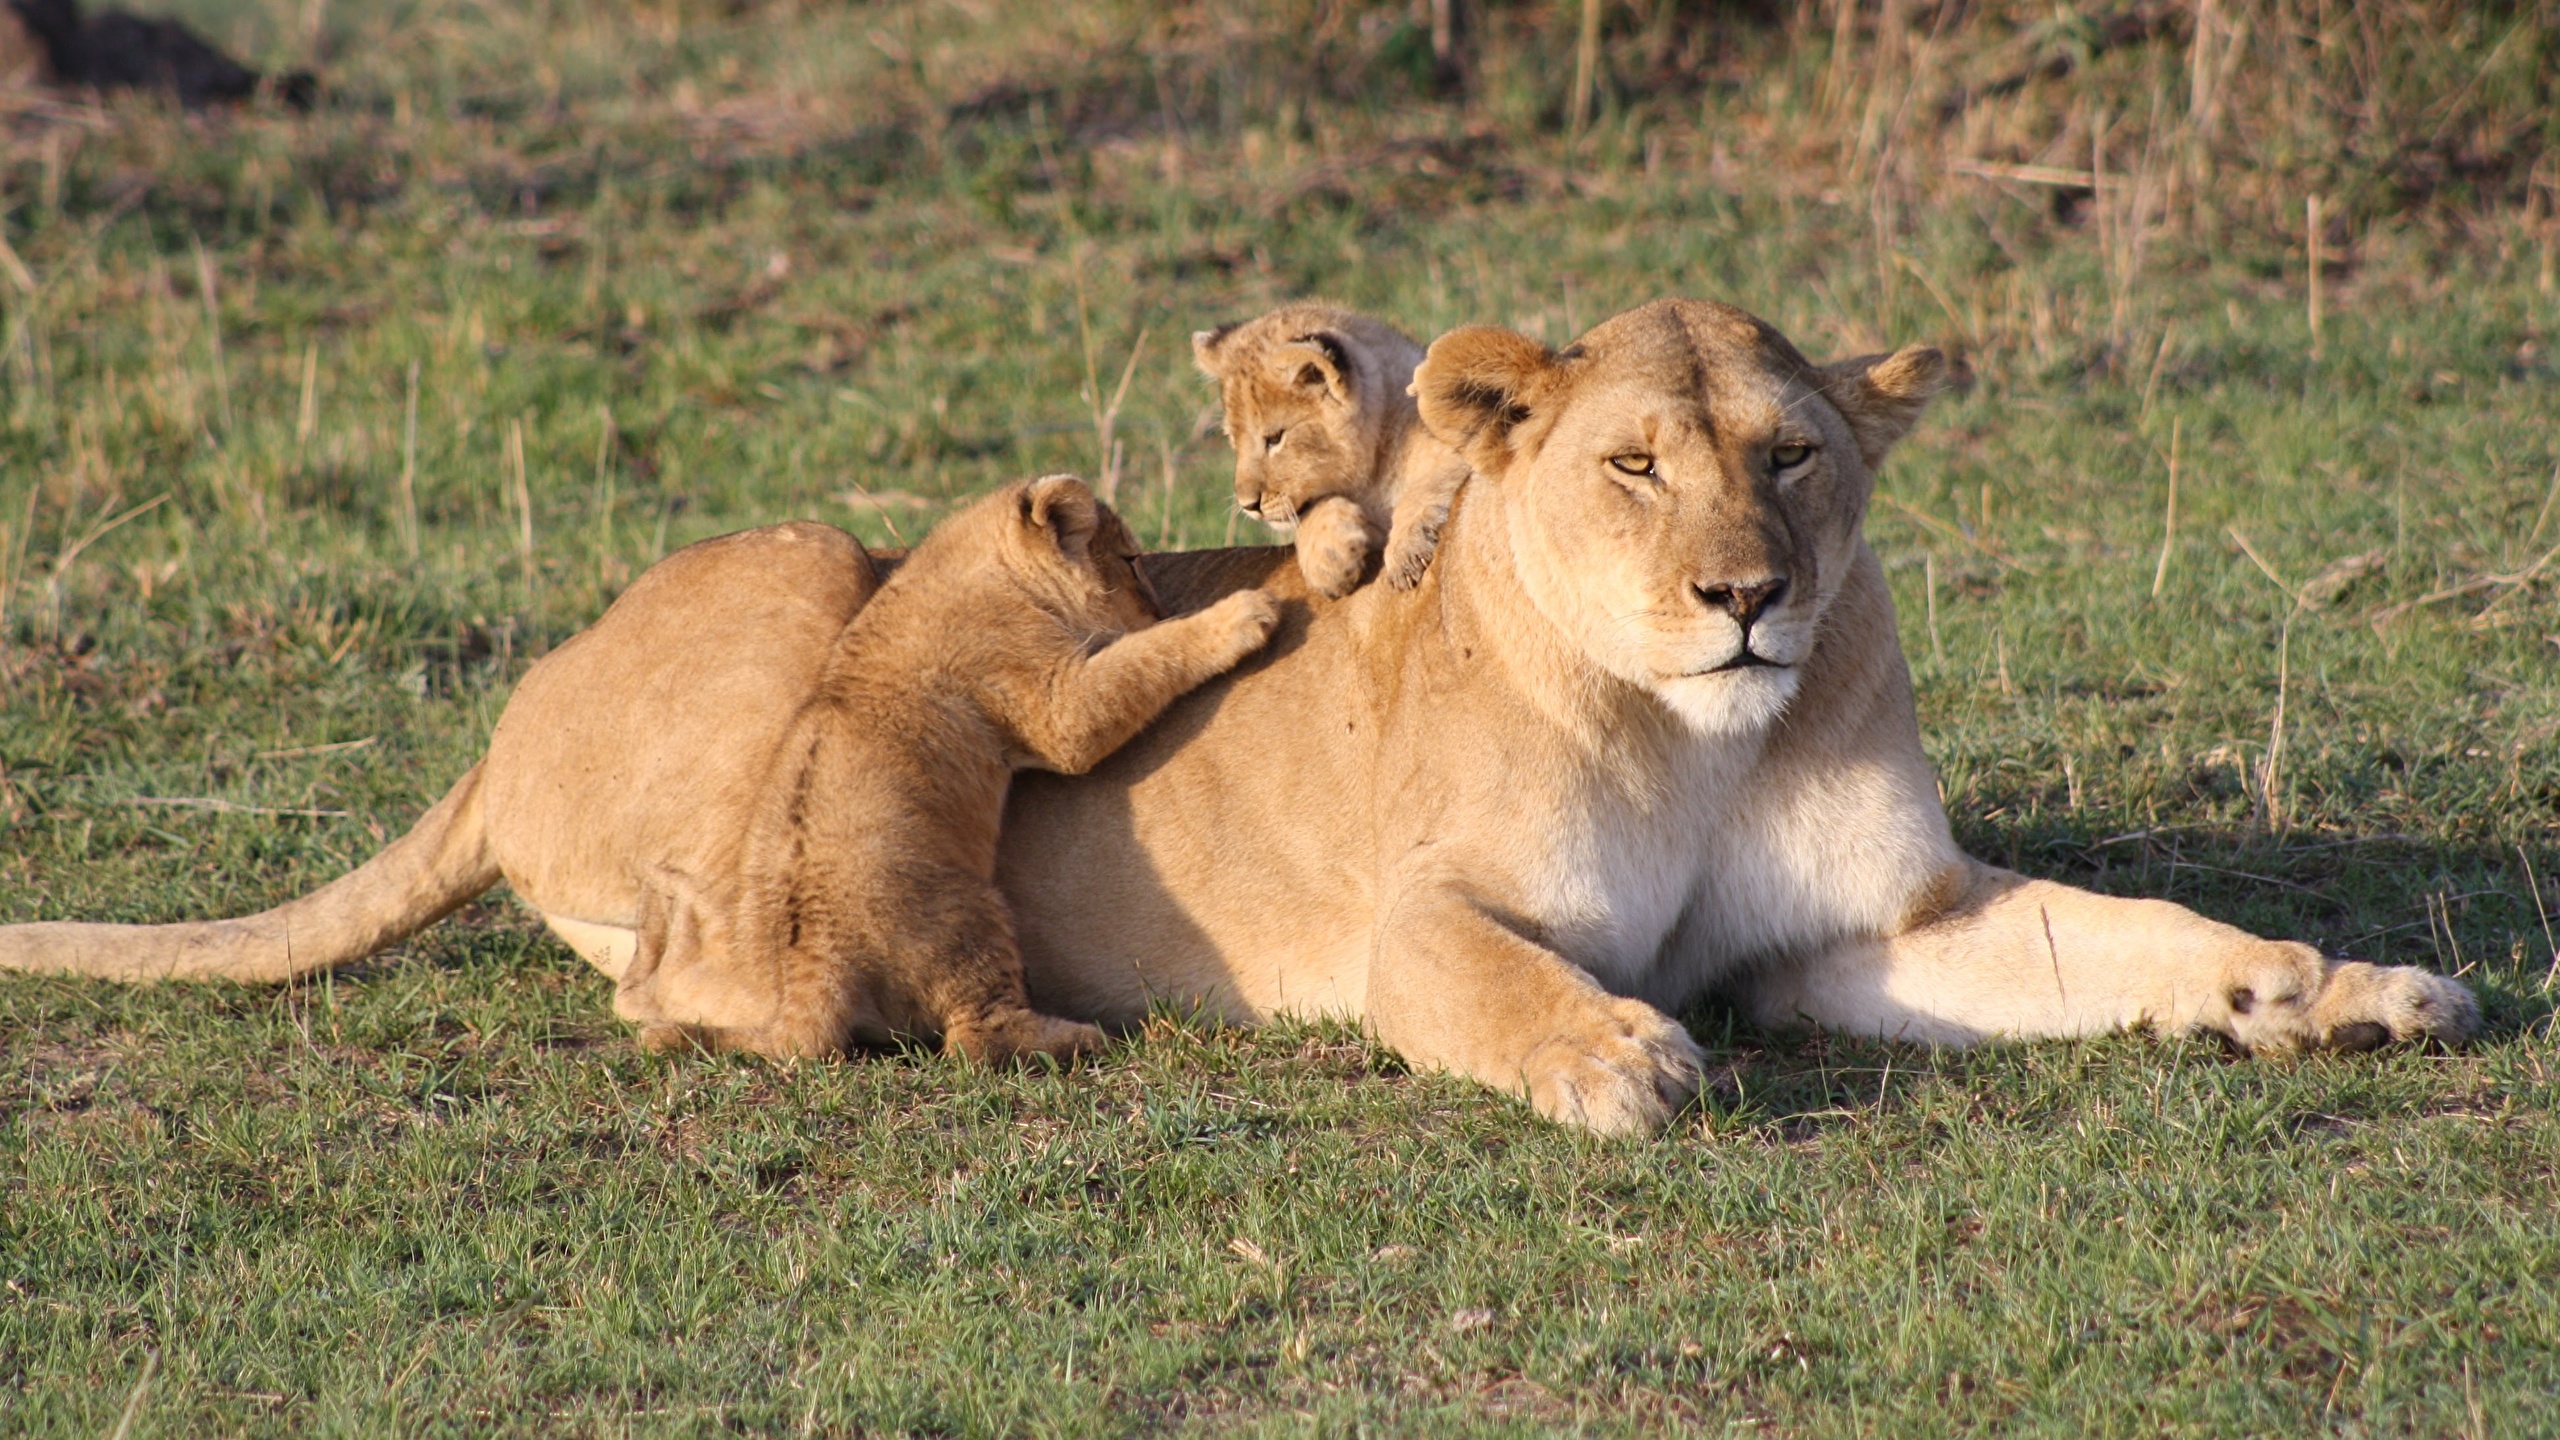 壁紙 2560x1440 ライオン 若い動物 Kenya 草 横になる 三 3 肉球 動物 ダウンロード 写真